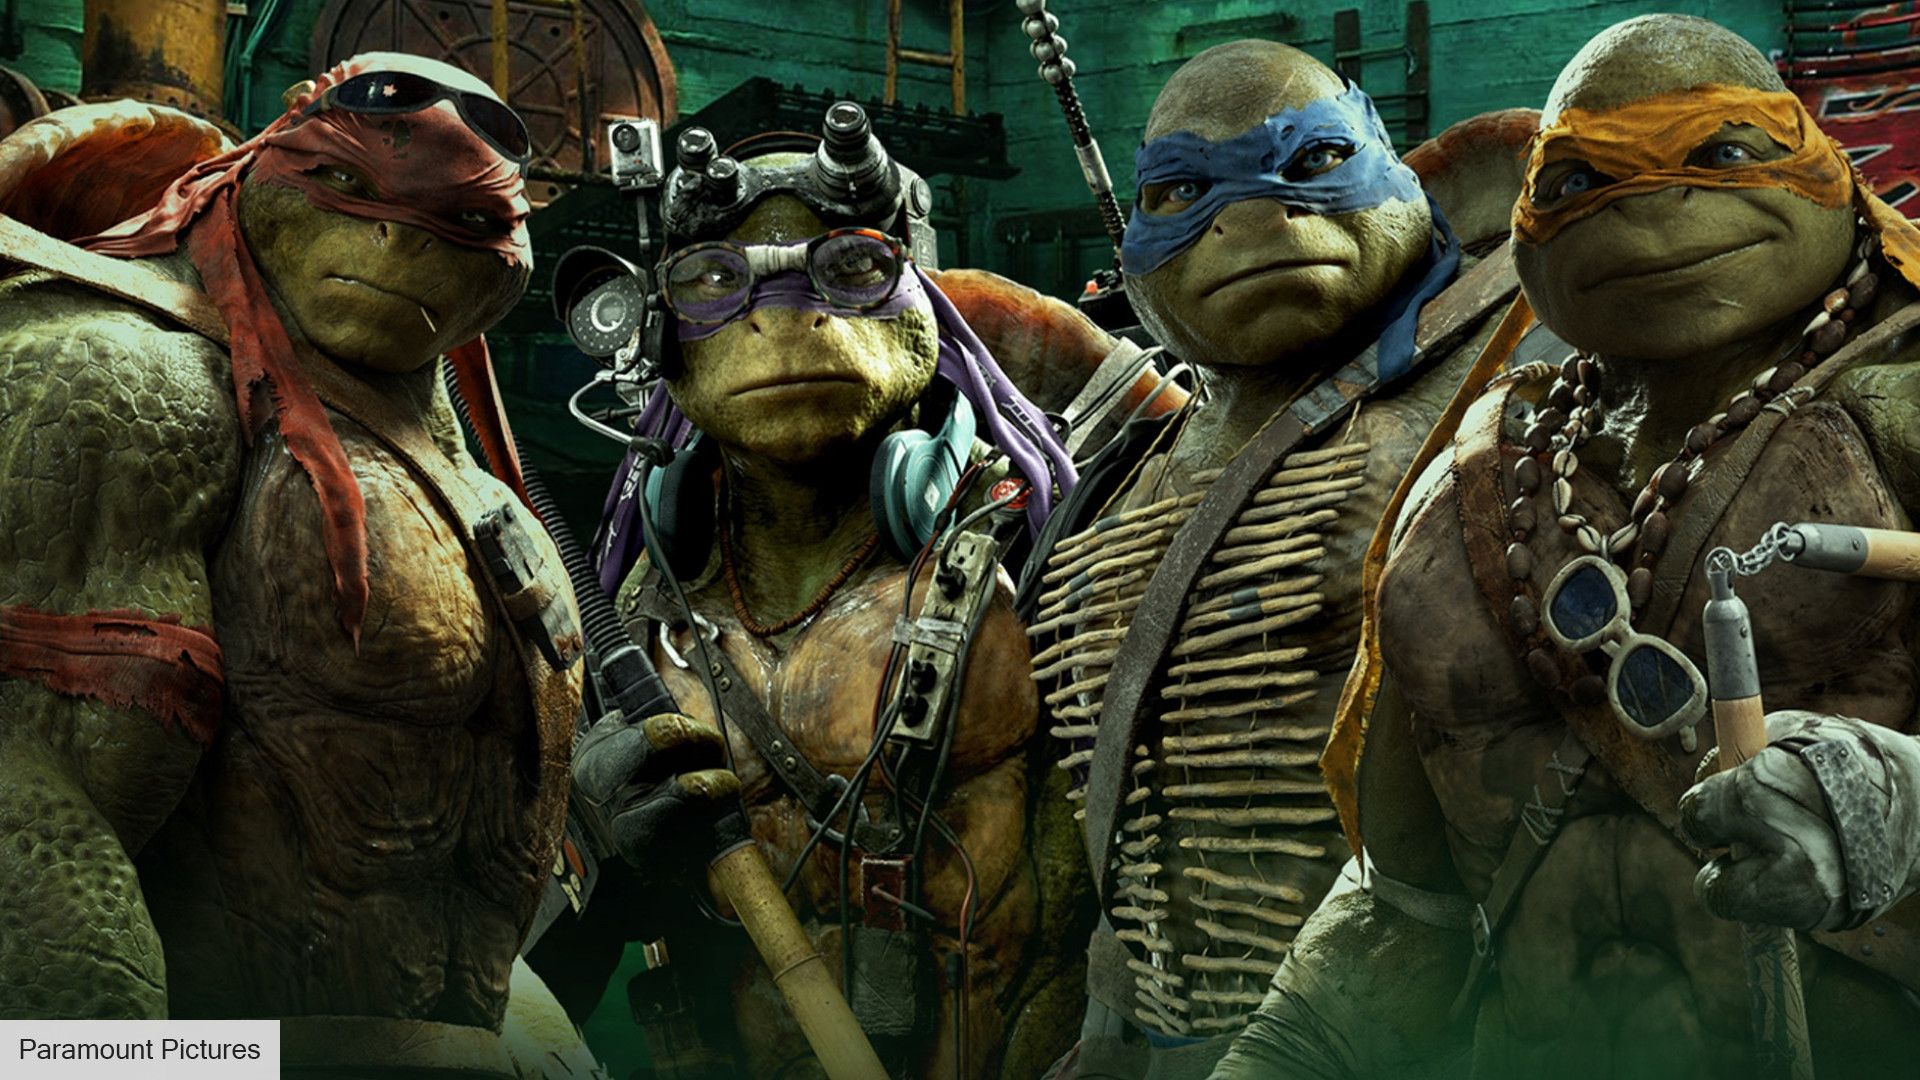 New Teenage Mutant Ninja Turtles movie in development | The Digital Fix